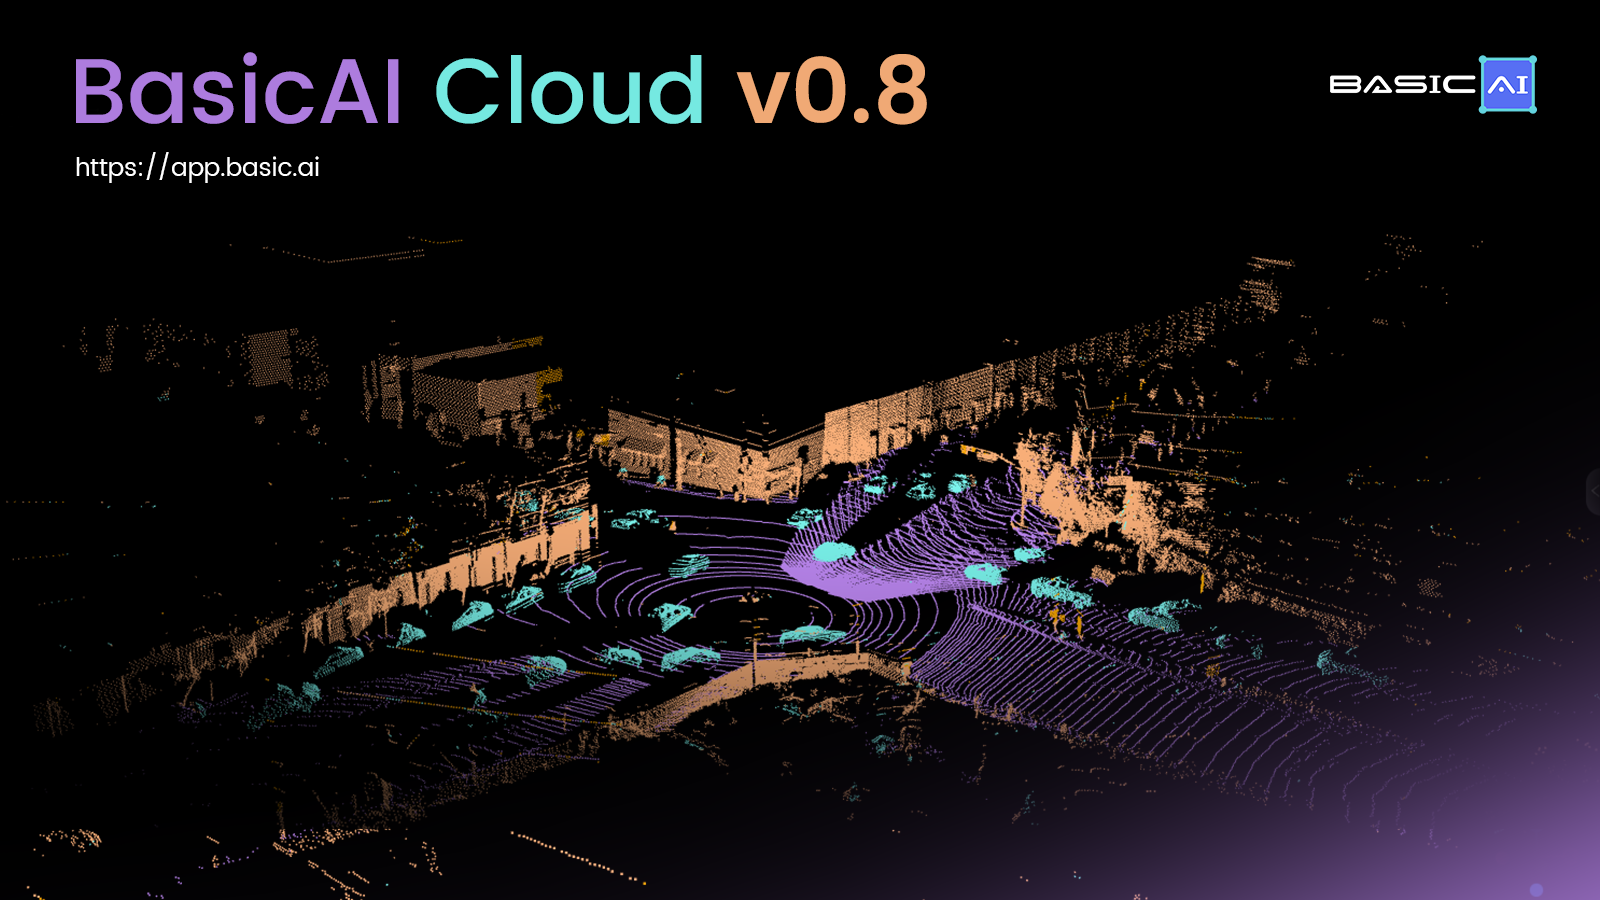 BasicAI Cloud v0.8